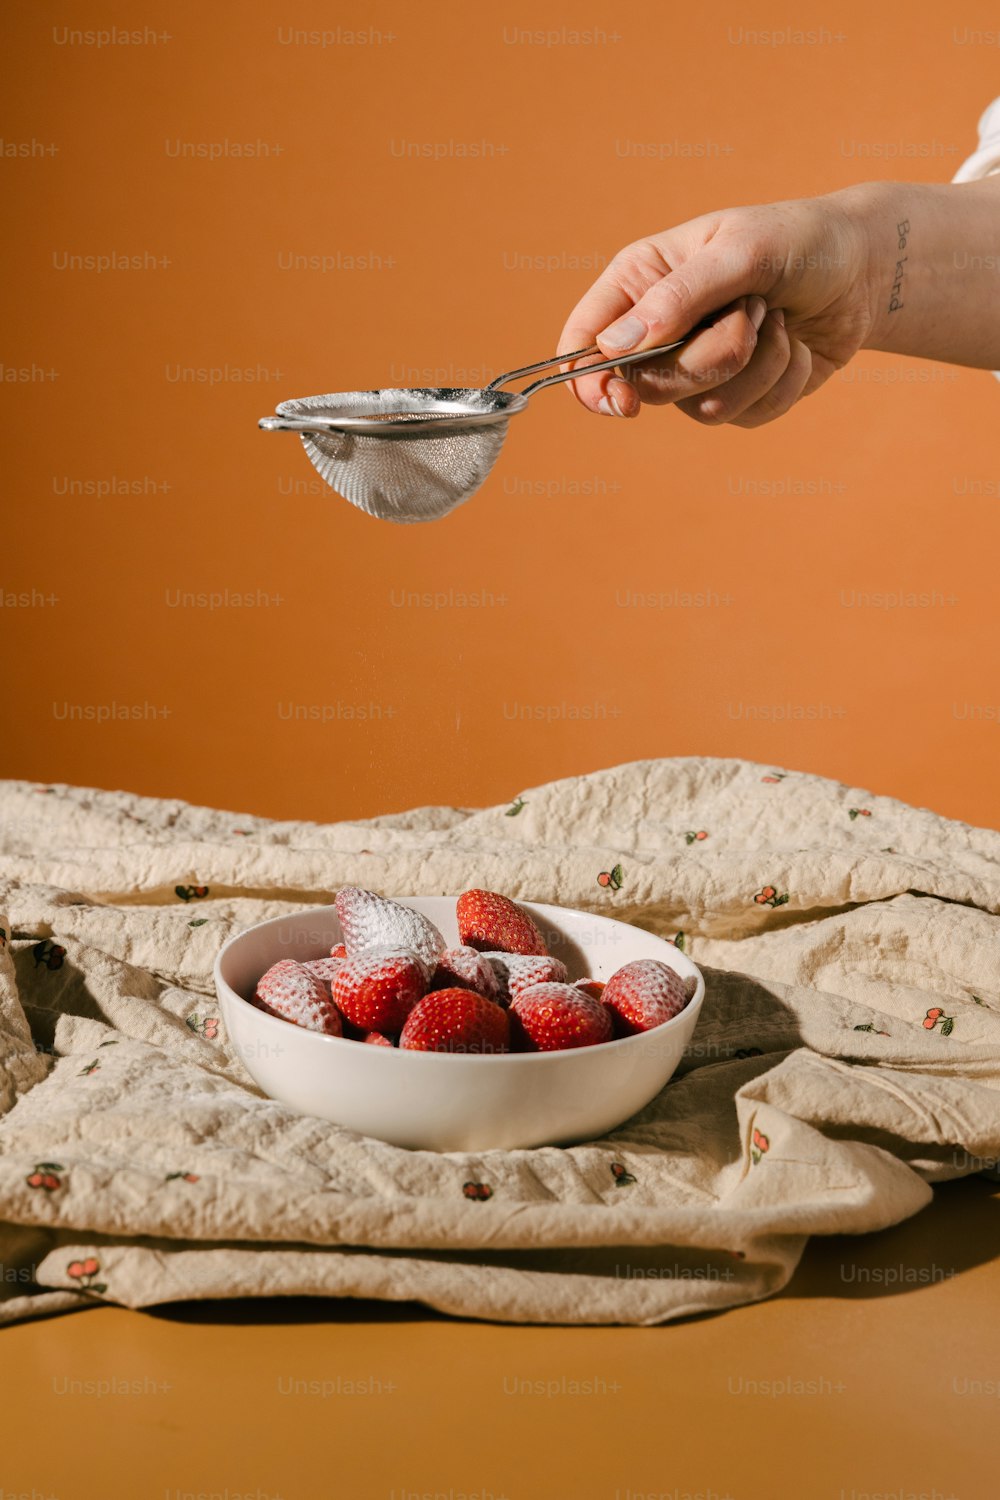 un bol de fraises sur une table avec une personne tenant une cuillère